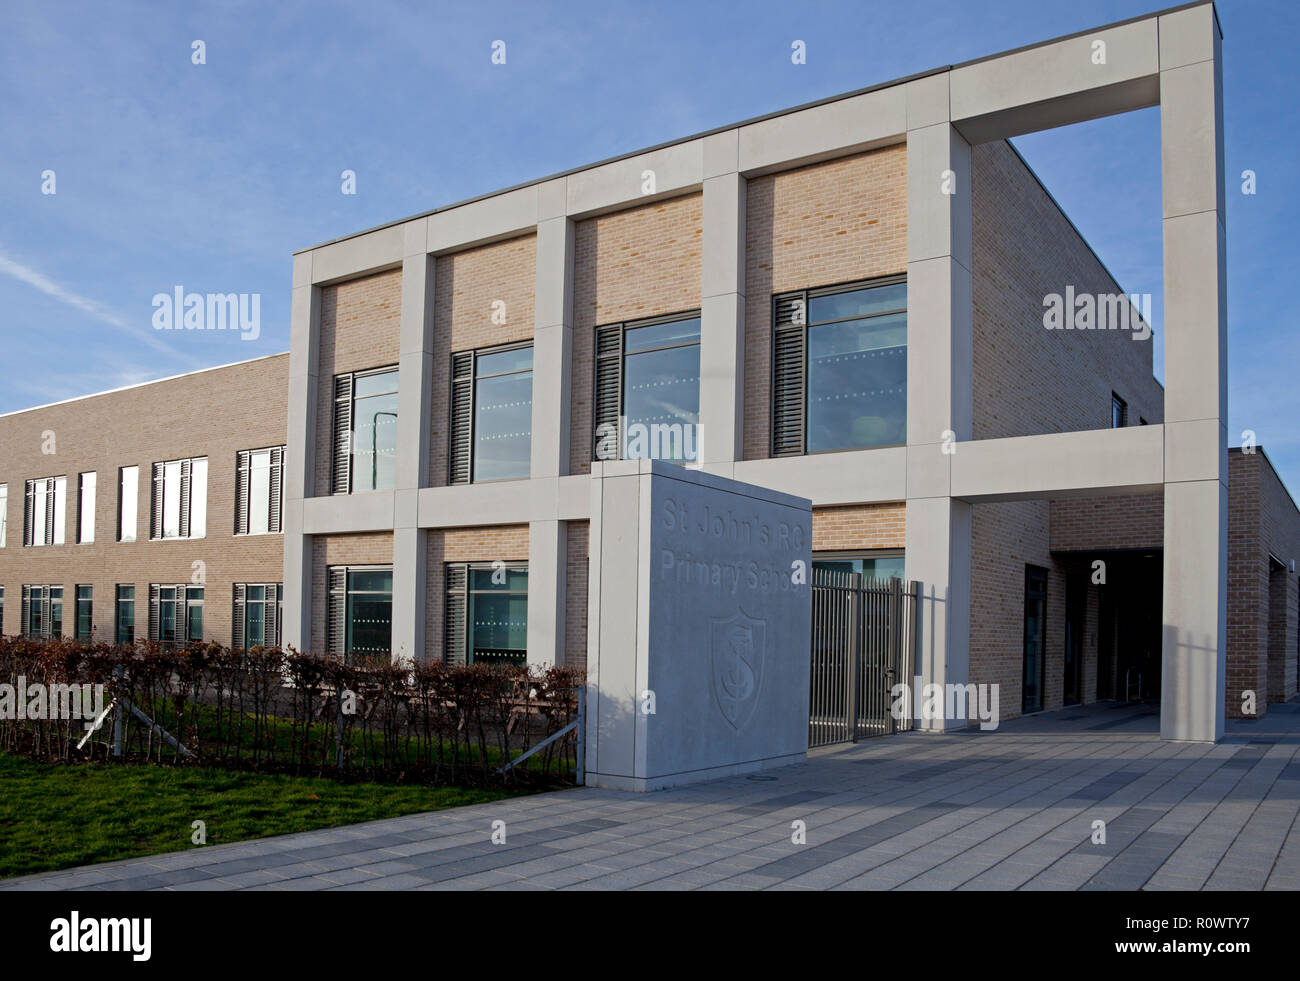 St John's RC Primary School, Duddingston, Édimbourg, Écosse, Royaume-Uni Banque D'Images